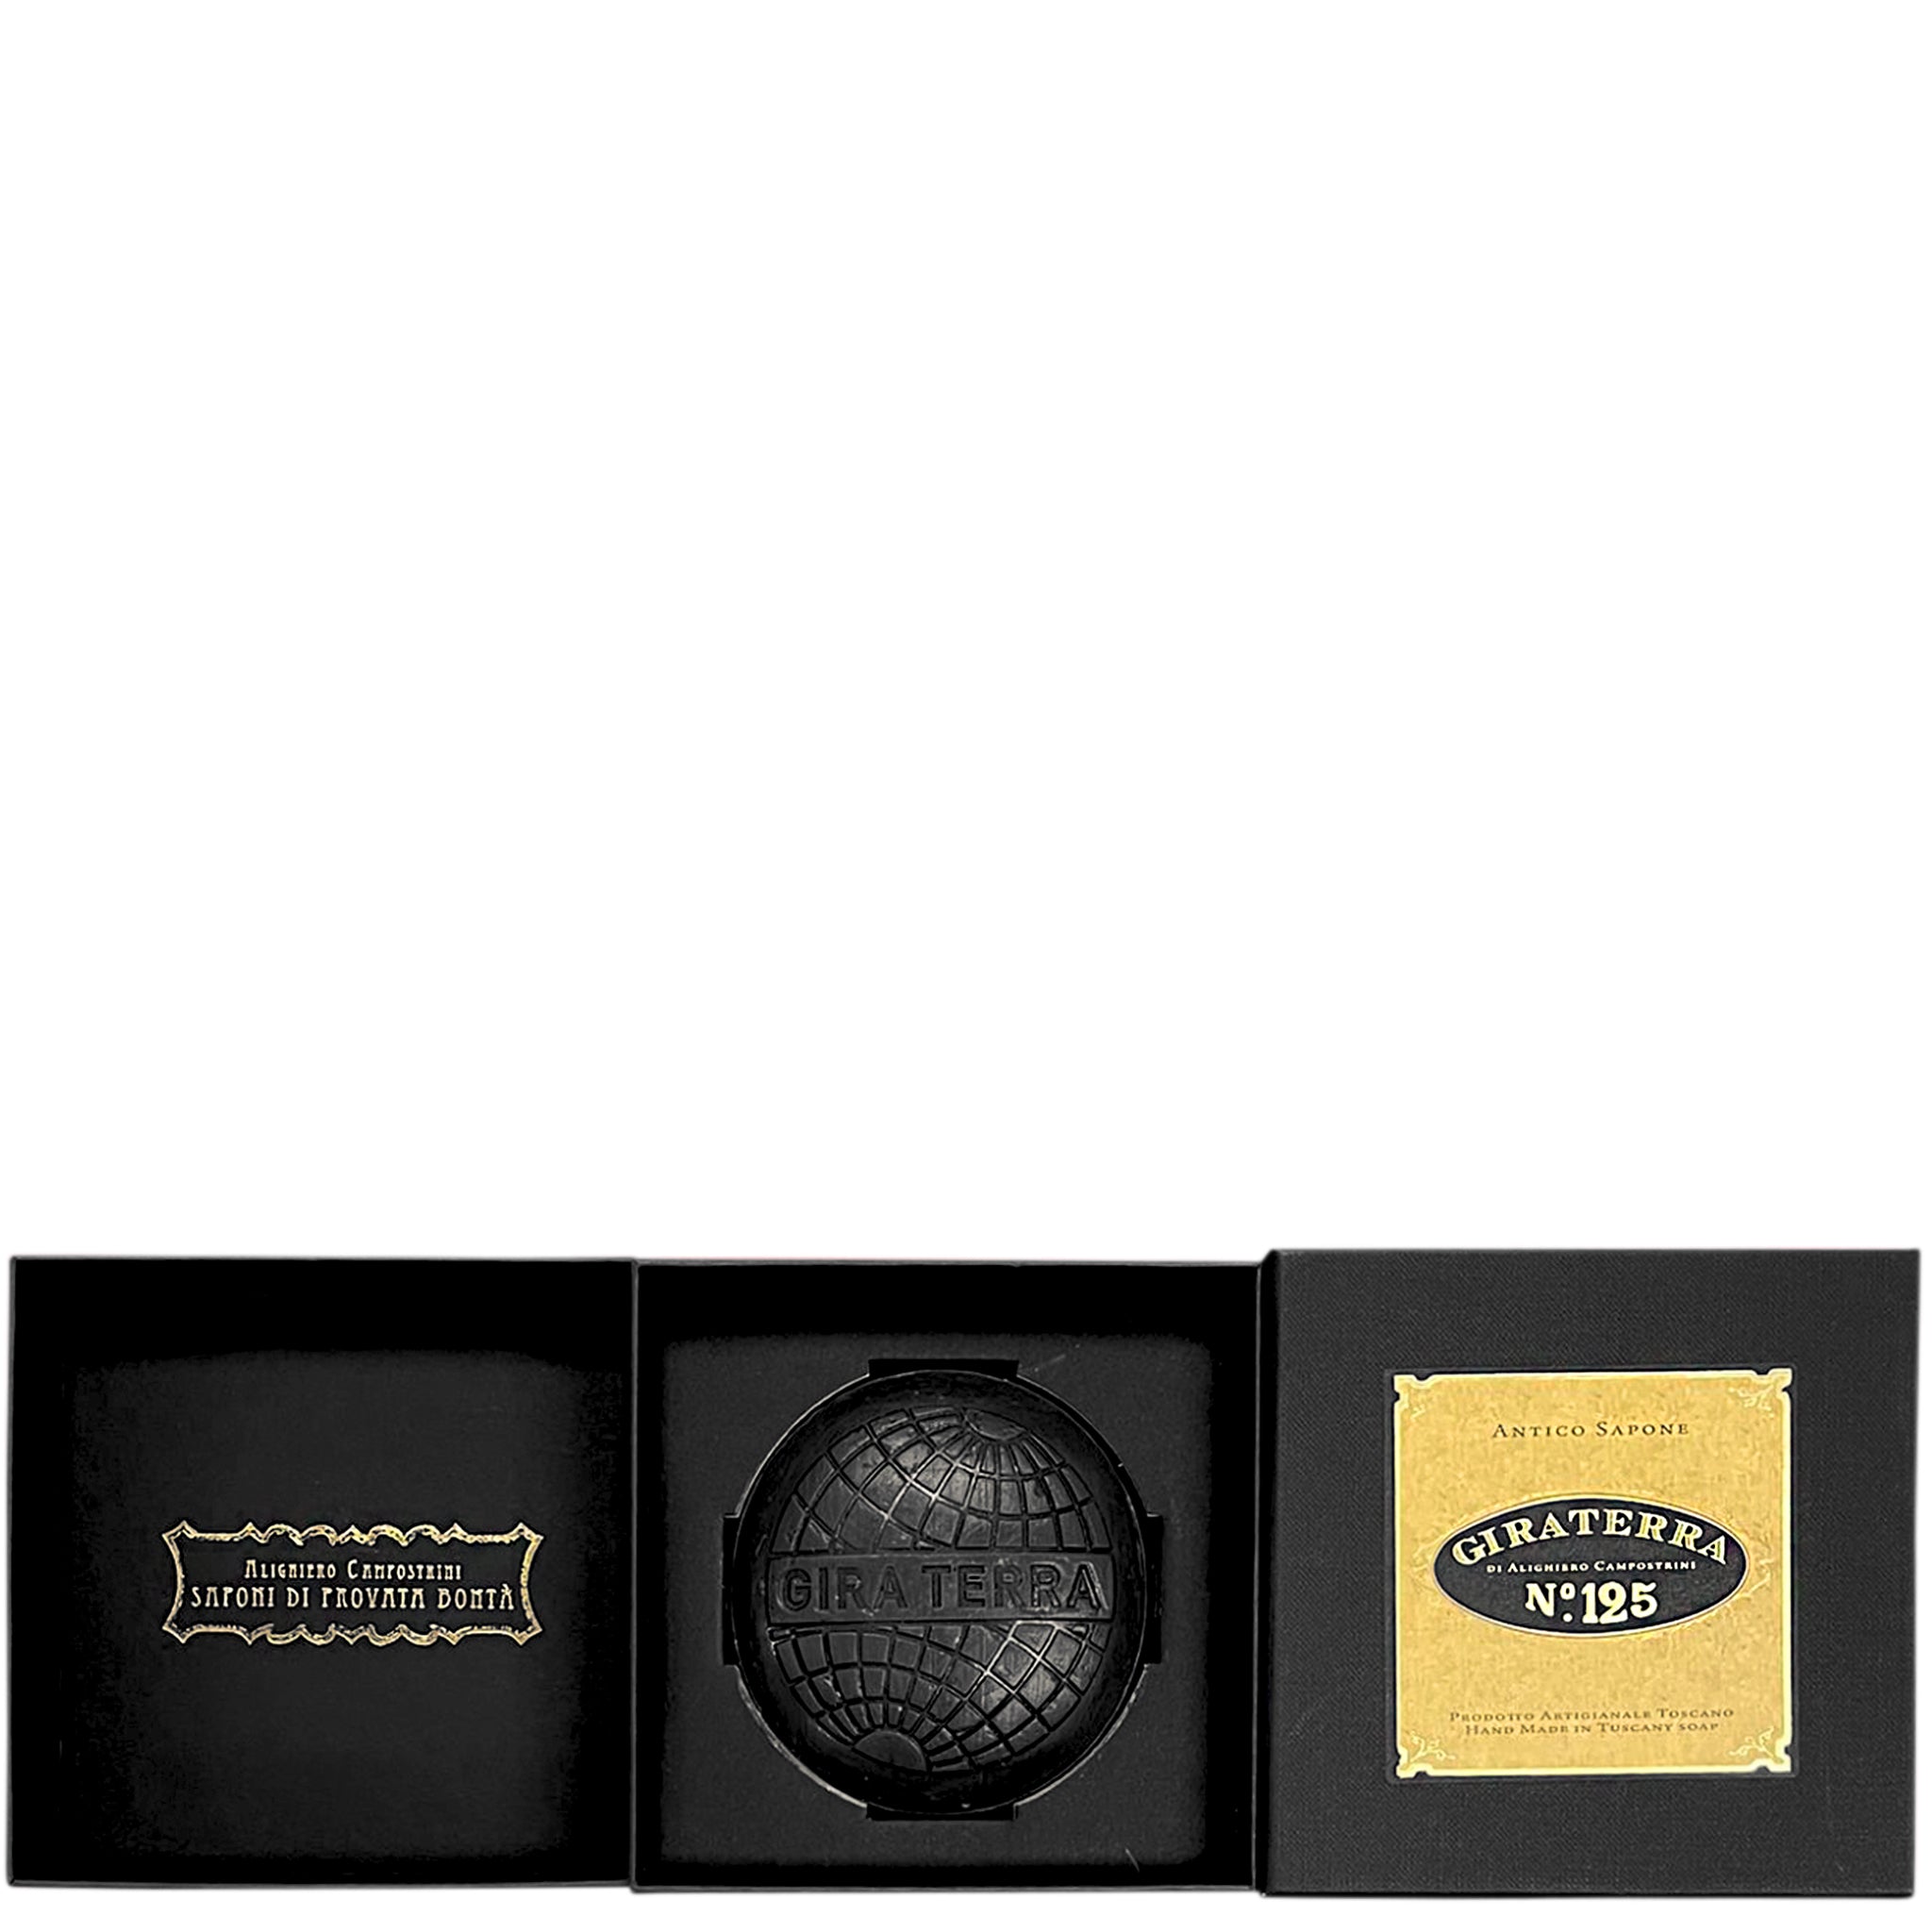 Giraterra Black Luxury Handmade Soap Gift Boxed 220g